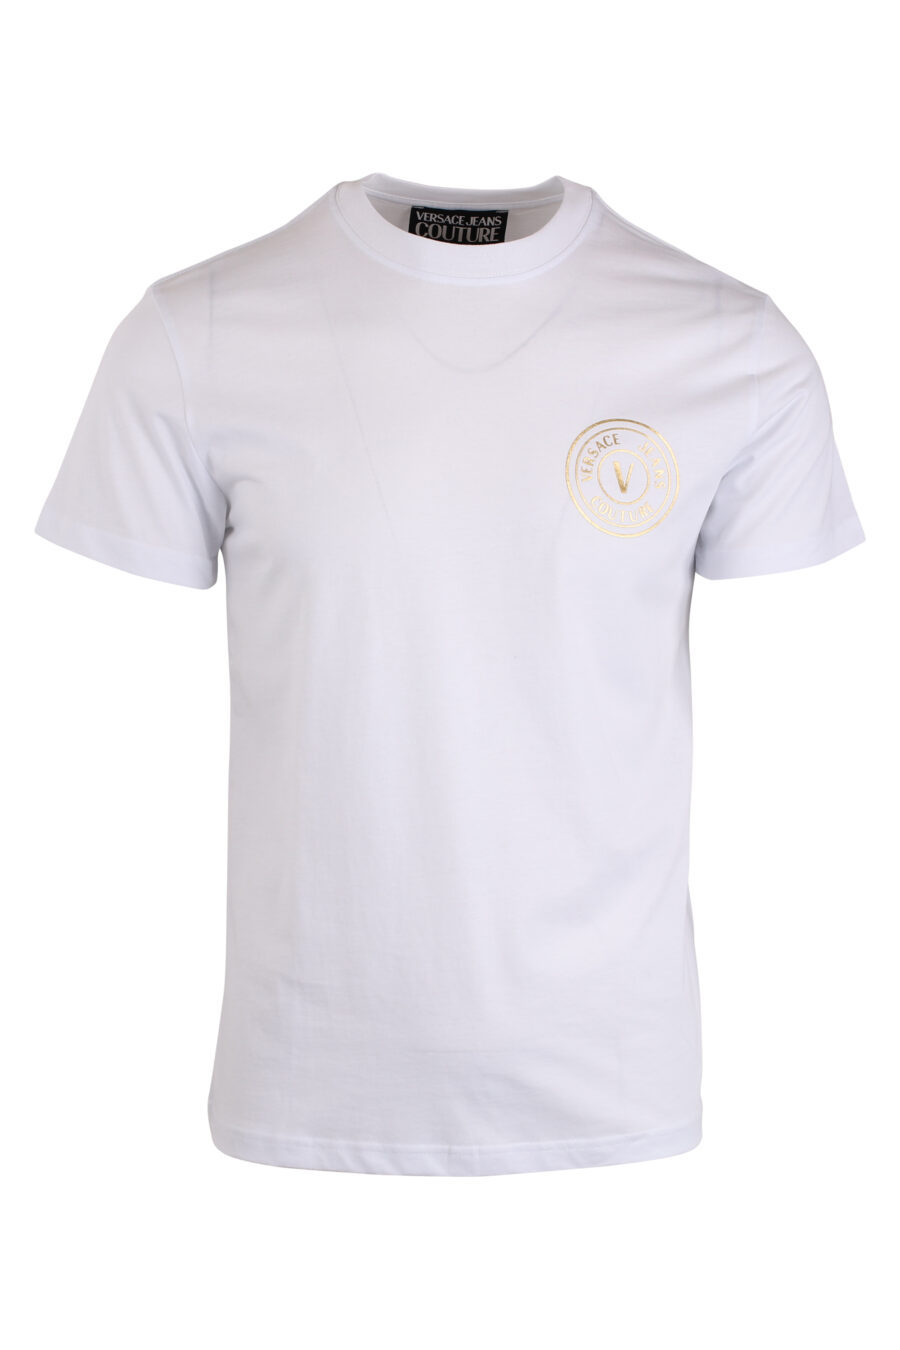 Camiseta blanca con logo redondo pequeño dorado - IMG 4209